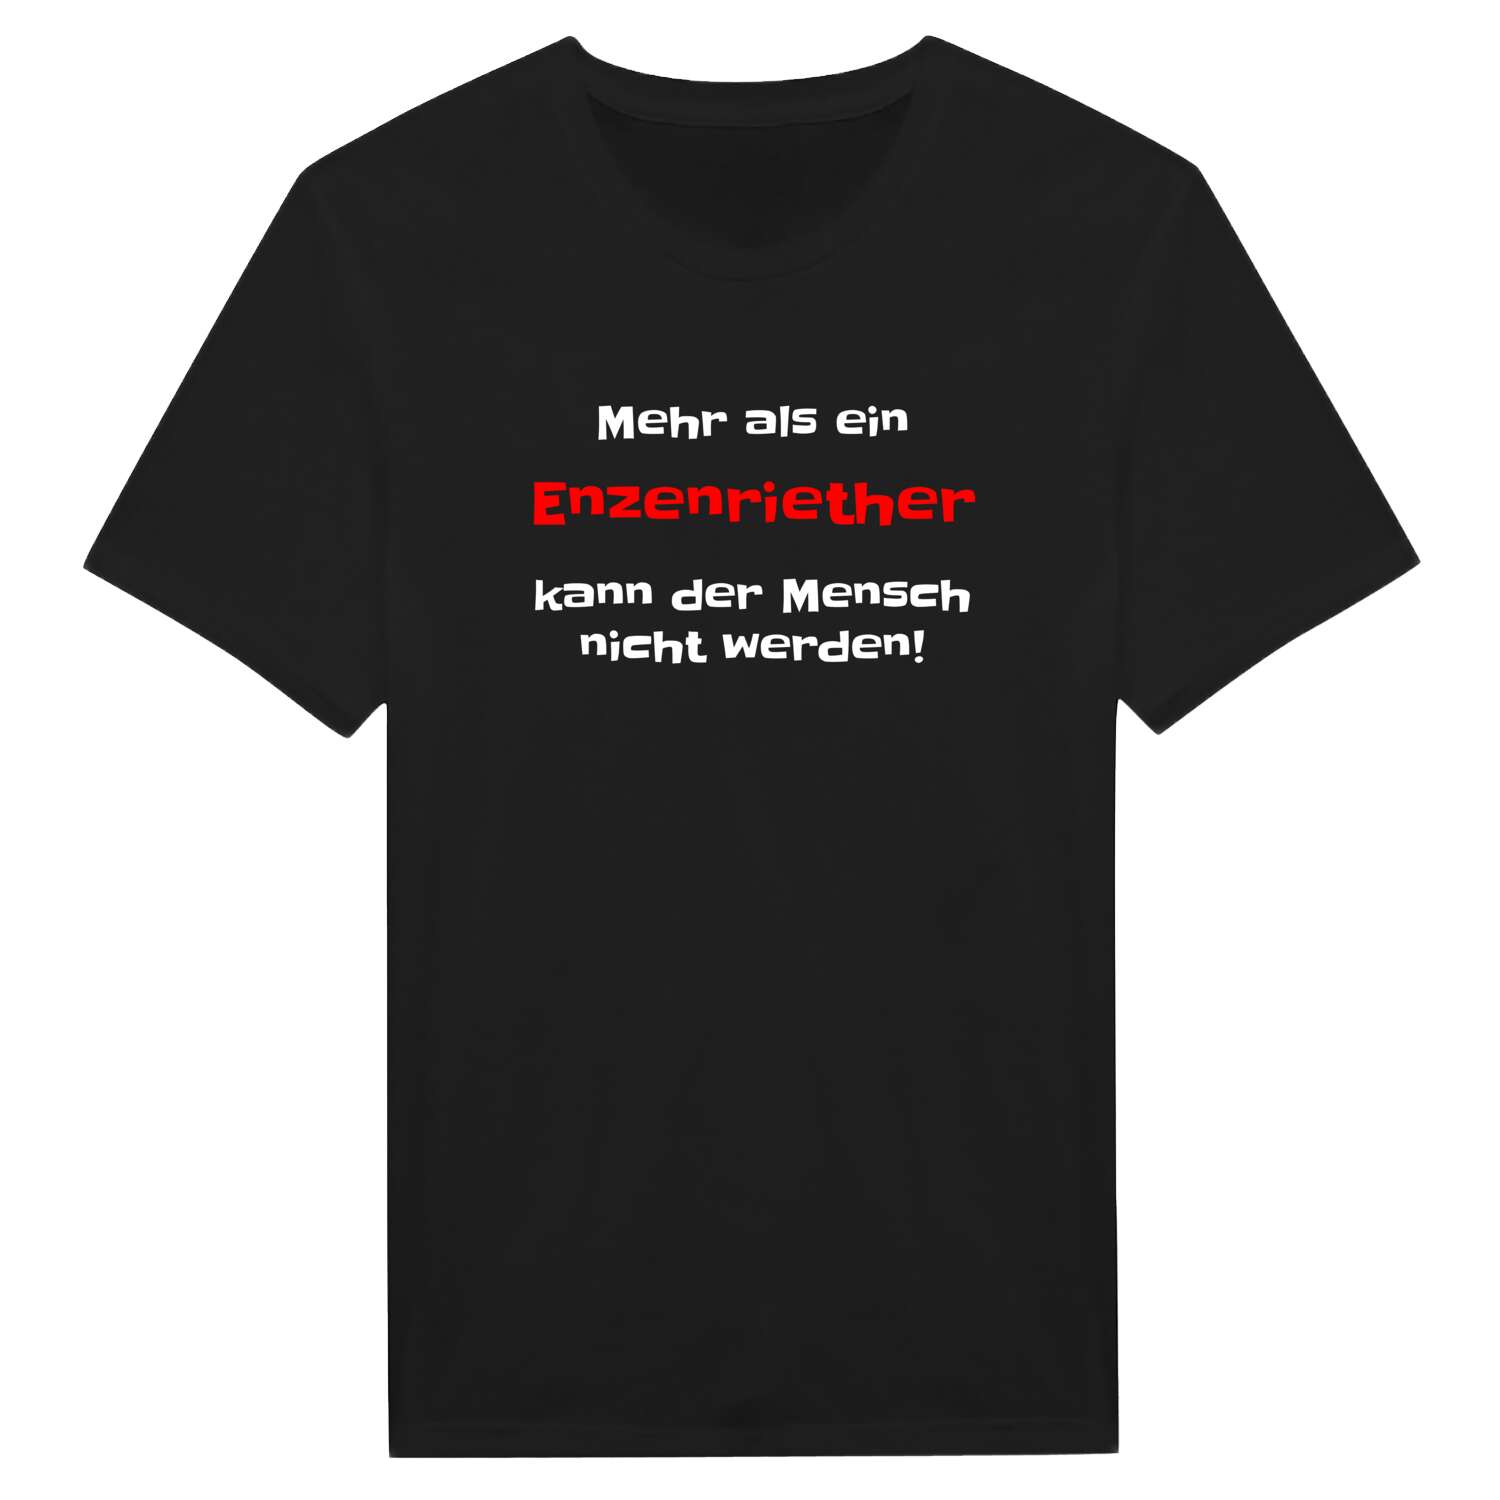 Enzenrieth T-Shirt »Mehr als ein«